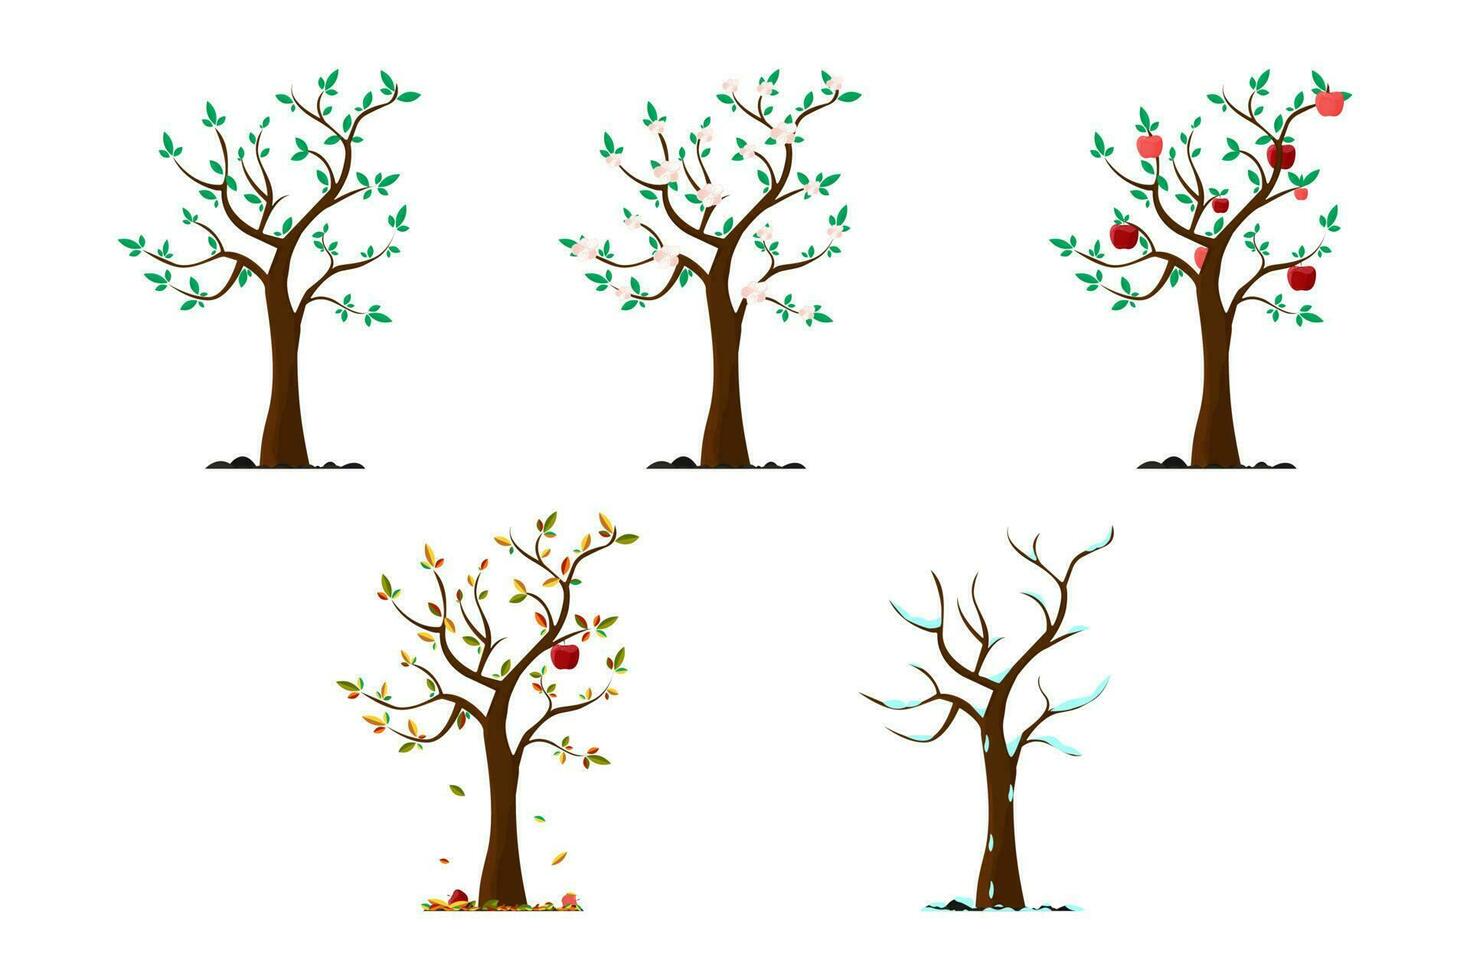 Apfel Baum im anders Jahreszeiten. Baum im Herbst. Apfel Baum im Winter, Sommer, Frühling. vektor